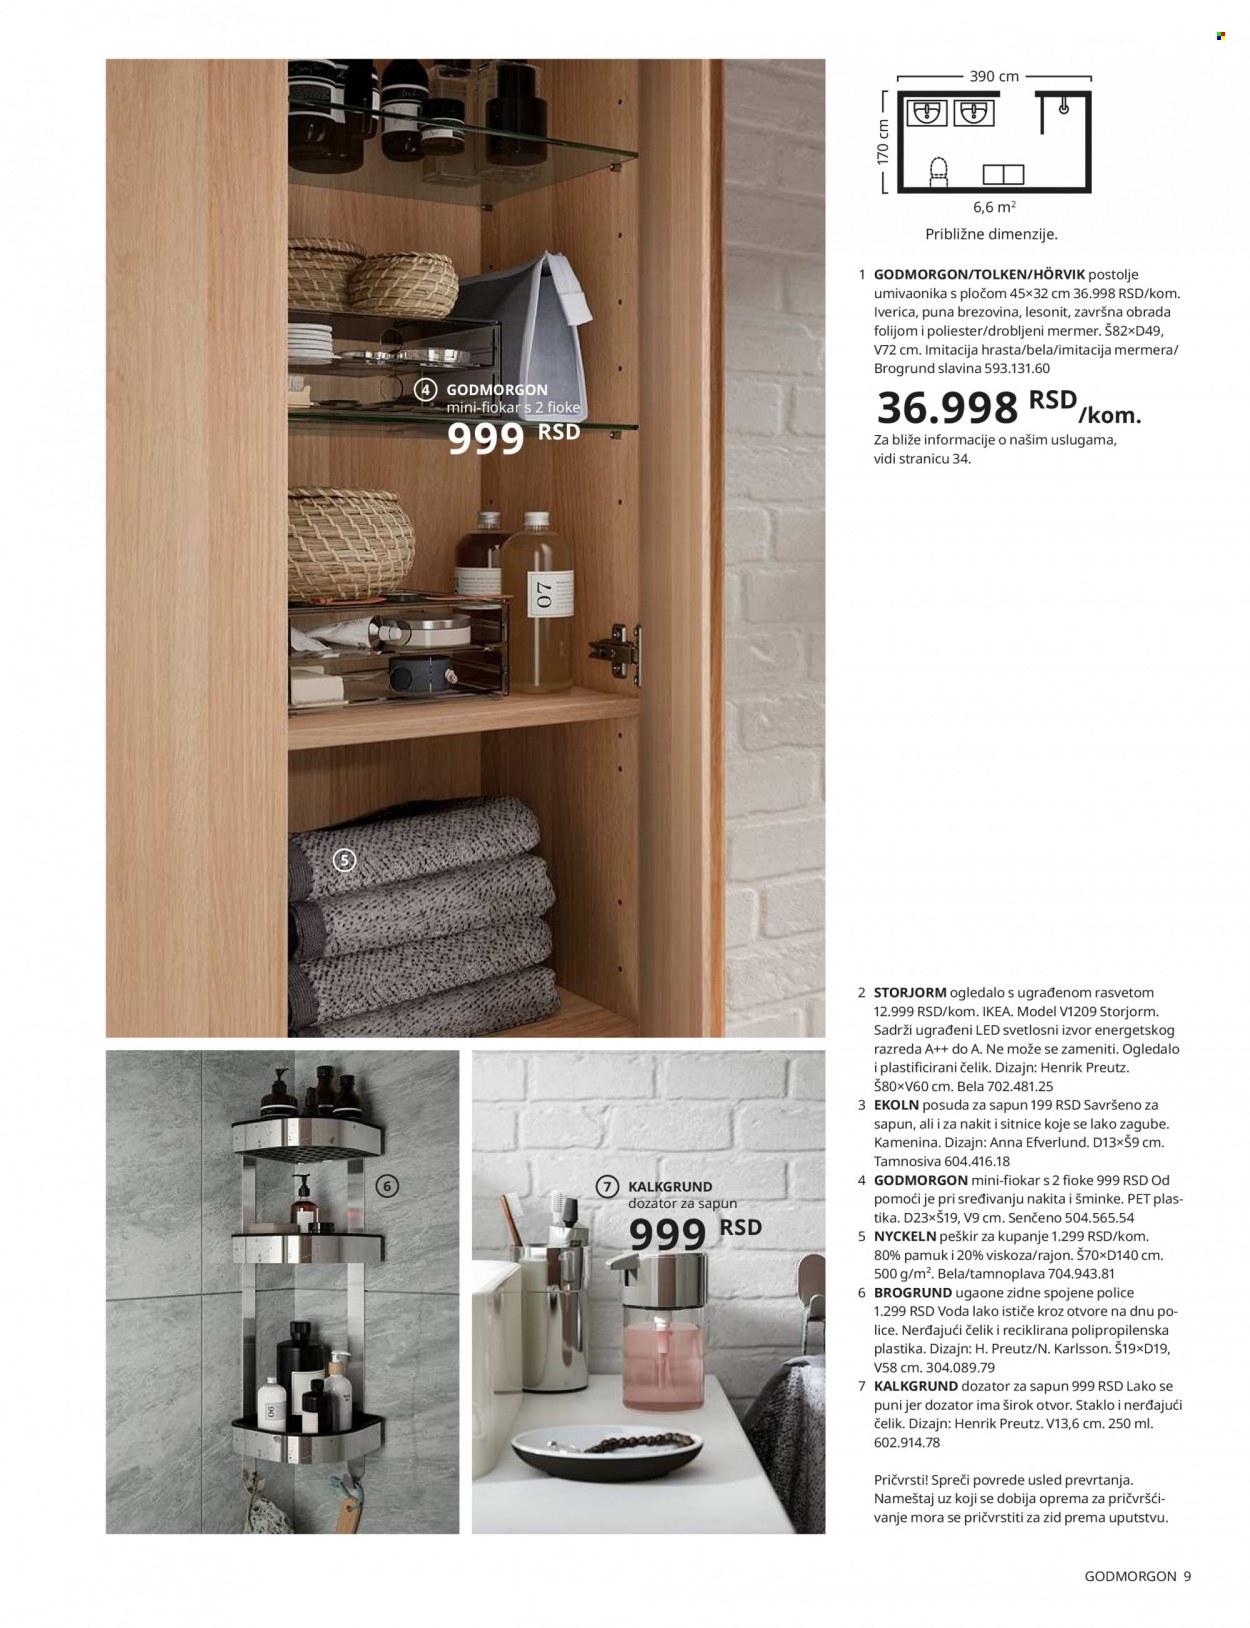 IKEA katalog - Proizvodi na akciji - ogledalo, četka, dozer tečnog sapuna, fiokice, peškir, polica, postolje umivaonika, fioke, slavina. Stranica 9.